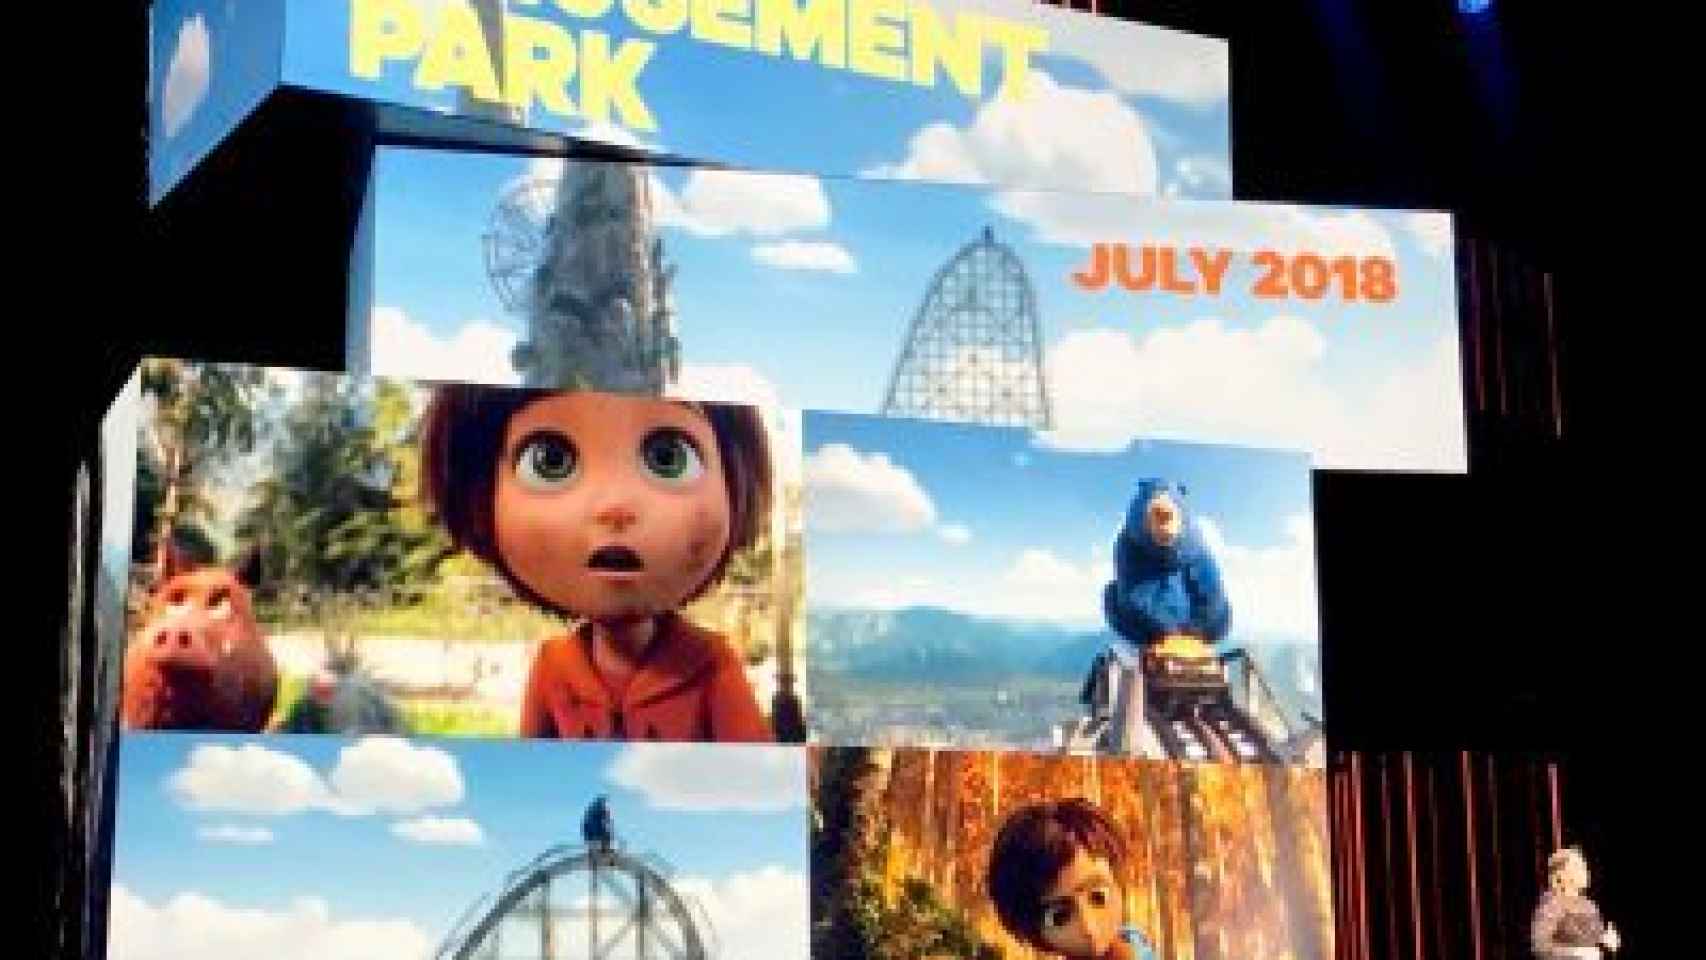 Amusement Park, la peli de Ilion para Paramount